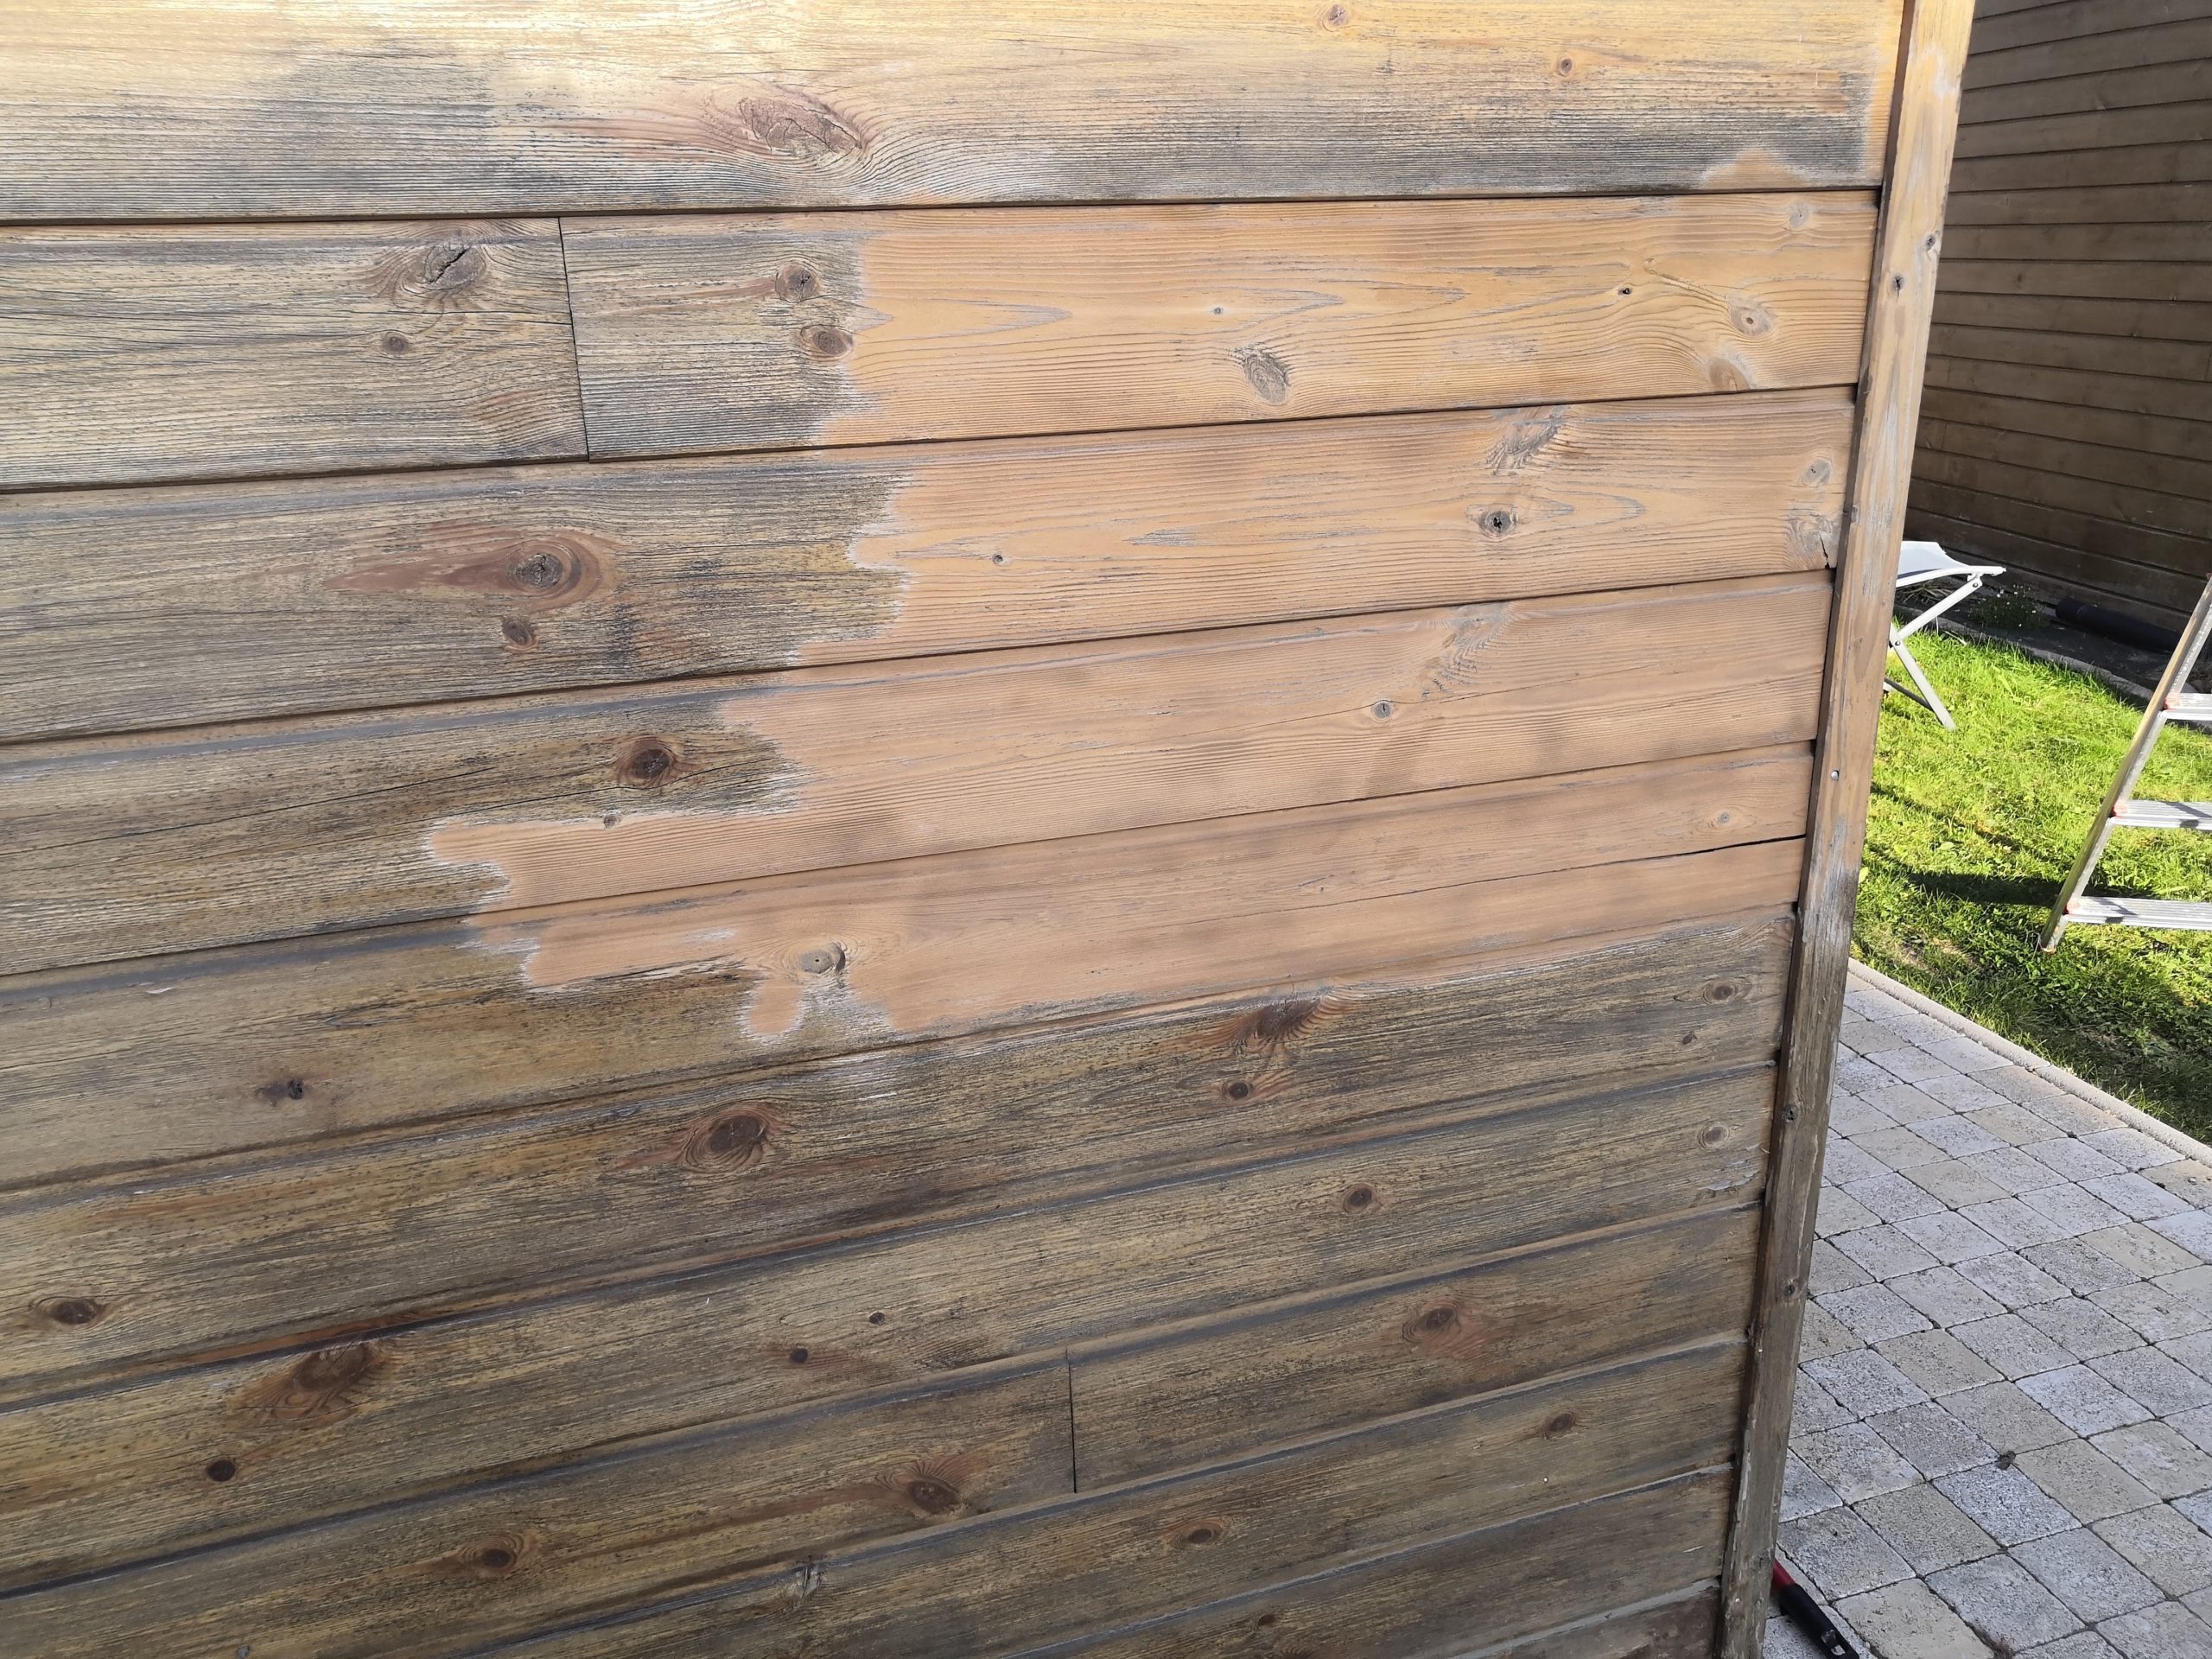 Entretien bardages bois - Préparer les surfaces produit de nettoyage